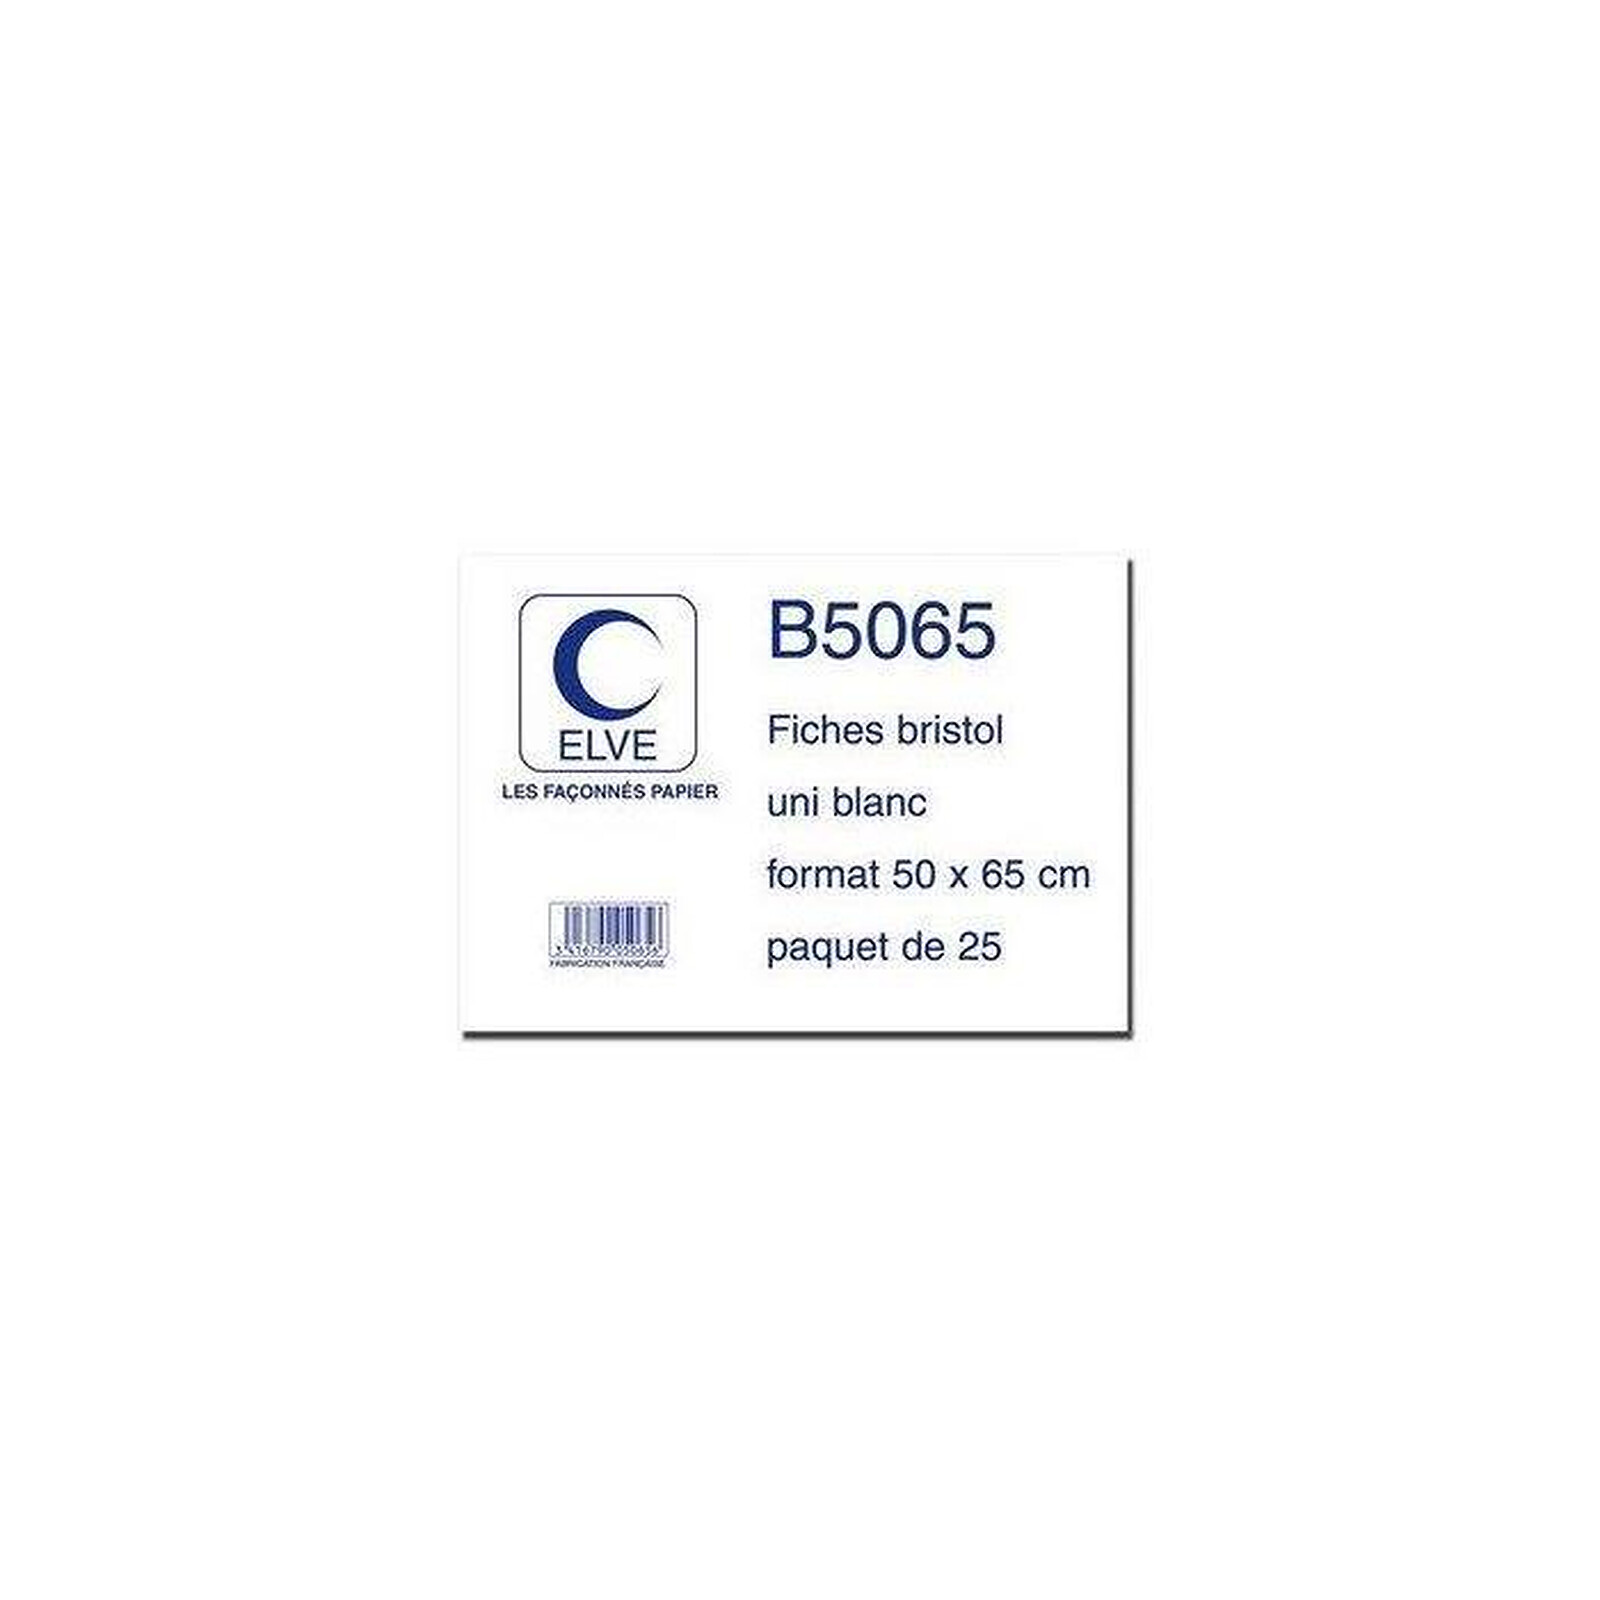 OXFORD Sachet 100 fiches bristol non perforées 210x297mm (A4) uni Blanc